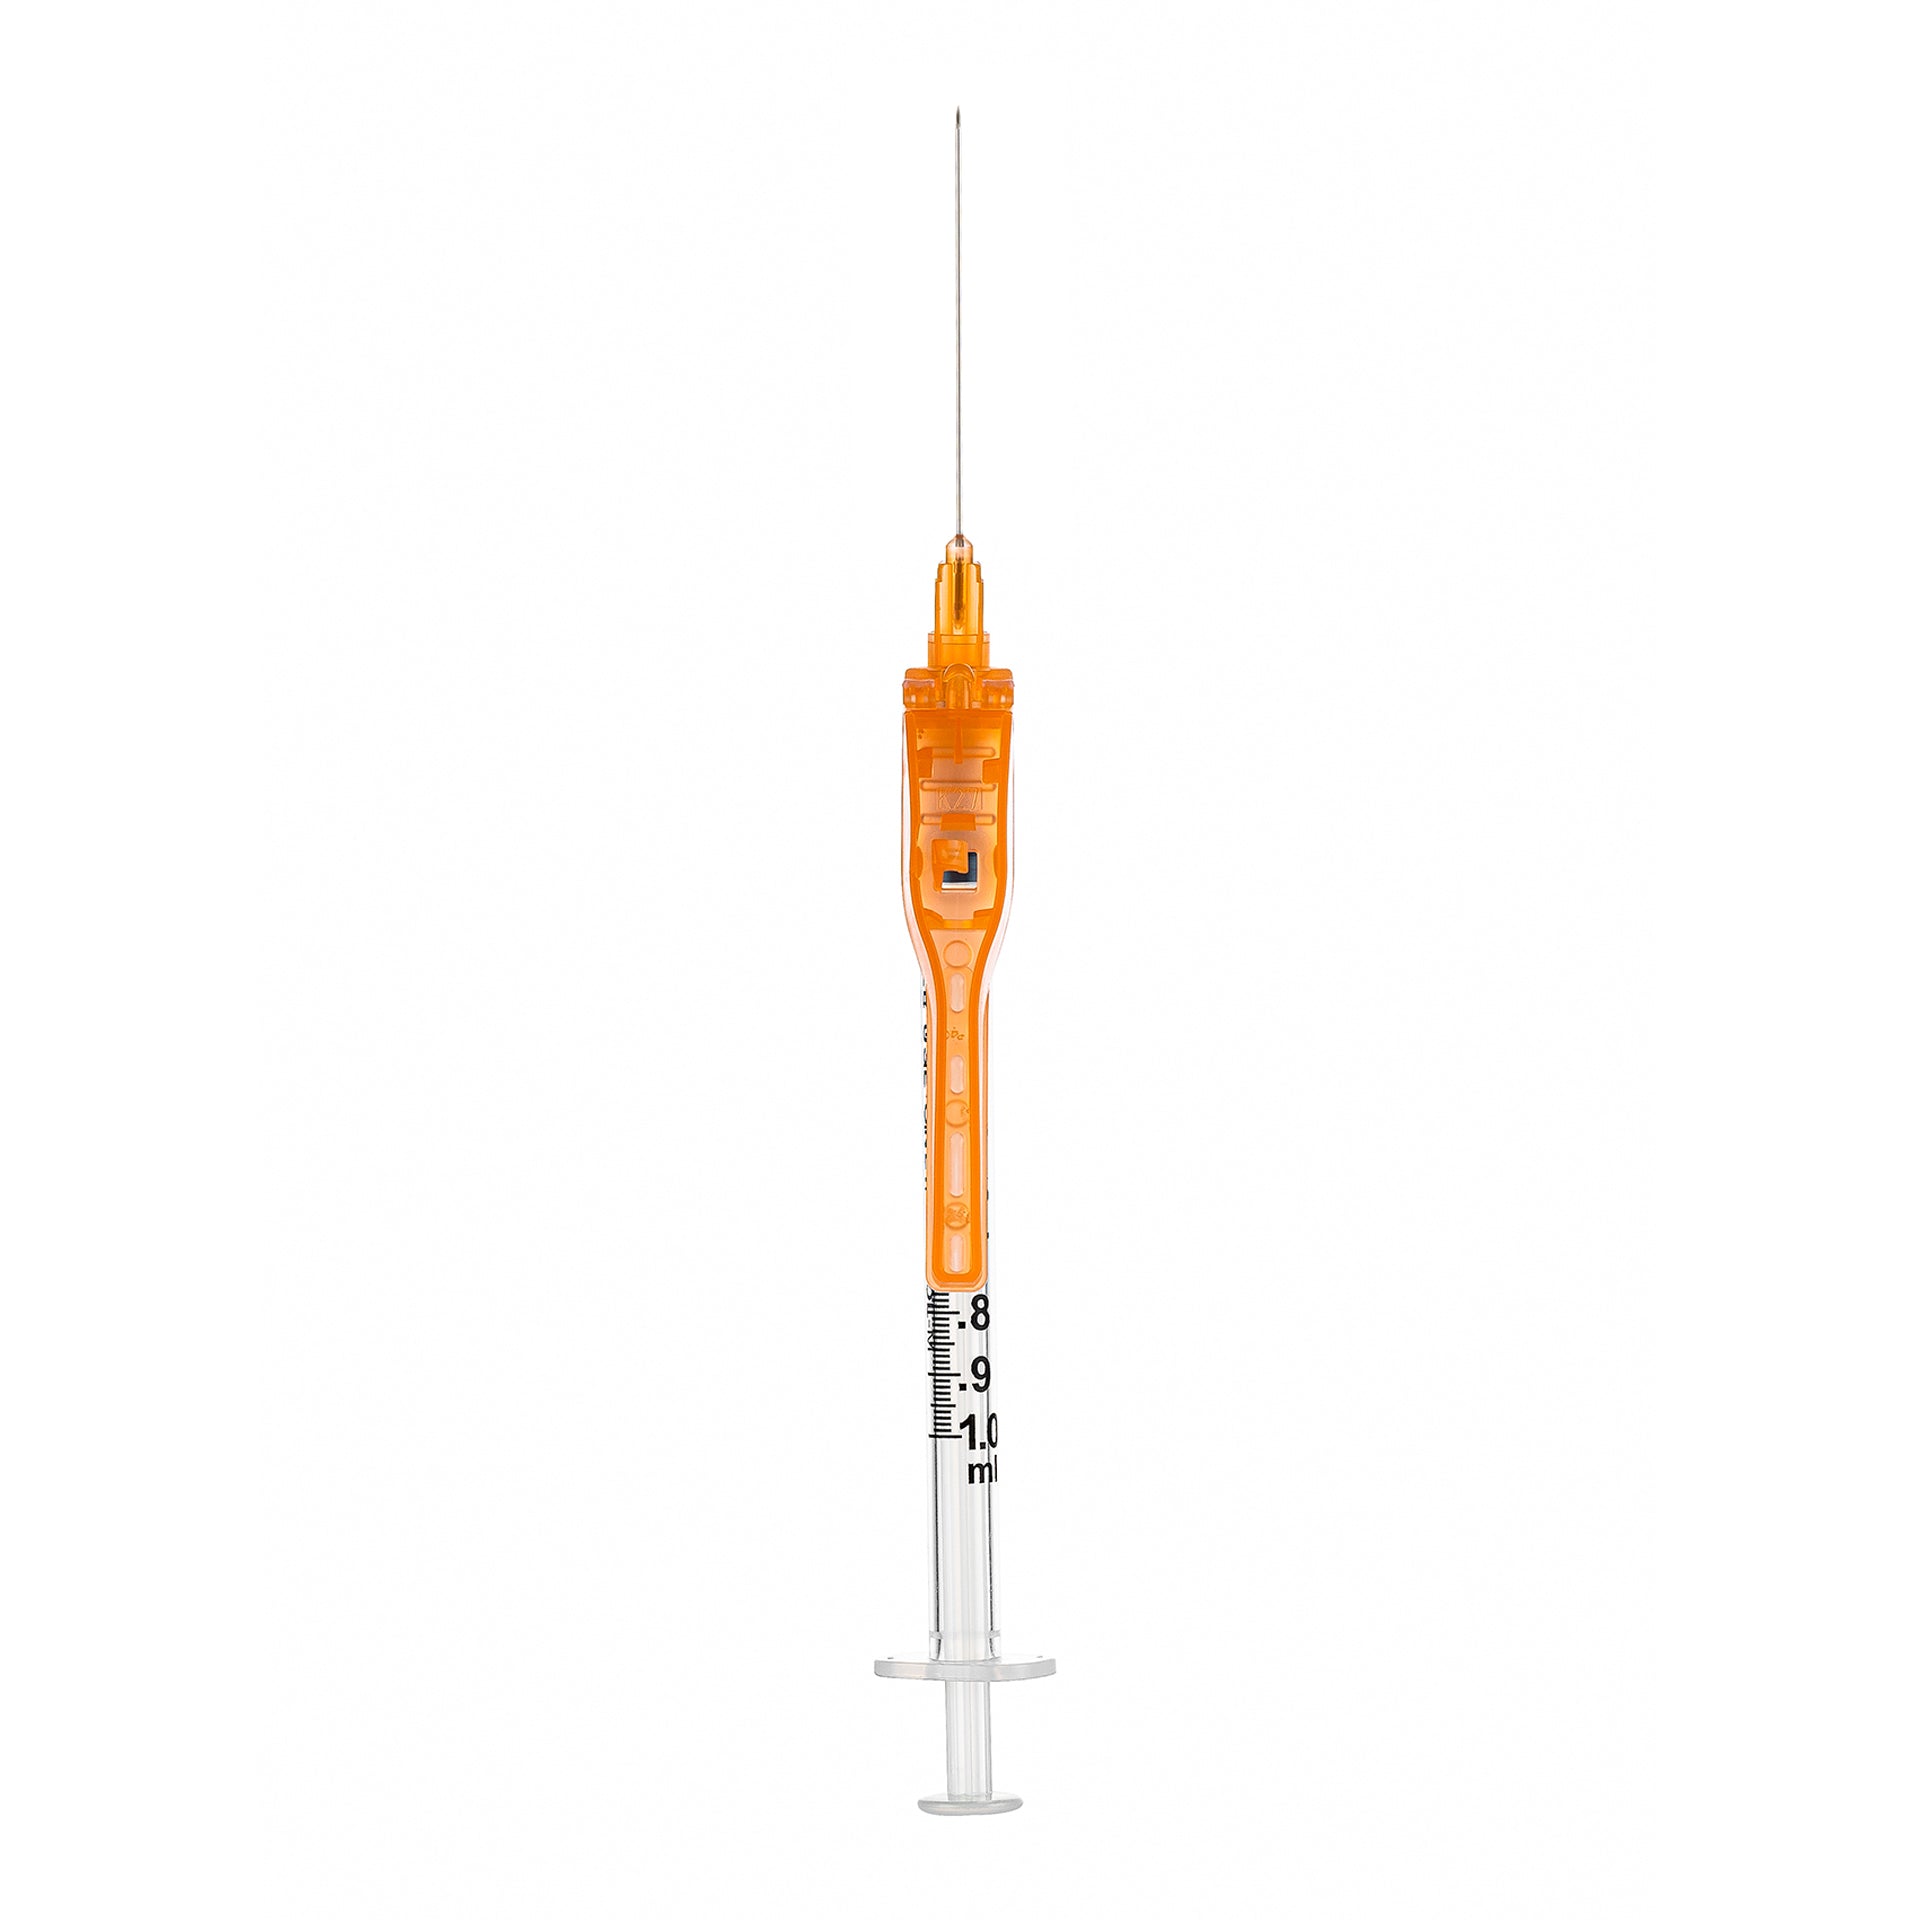 BX/50 - SOL-CARE 1ml Luer Lock Syringe w/Safety Needle 27G*1/2 (needle aside)